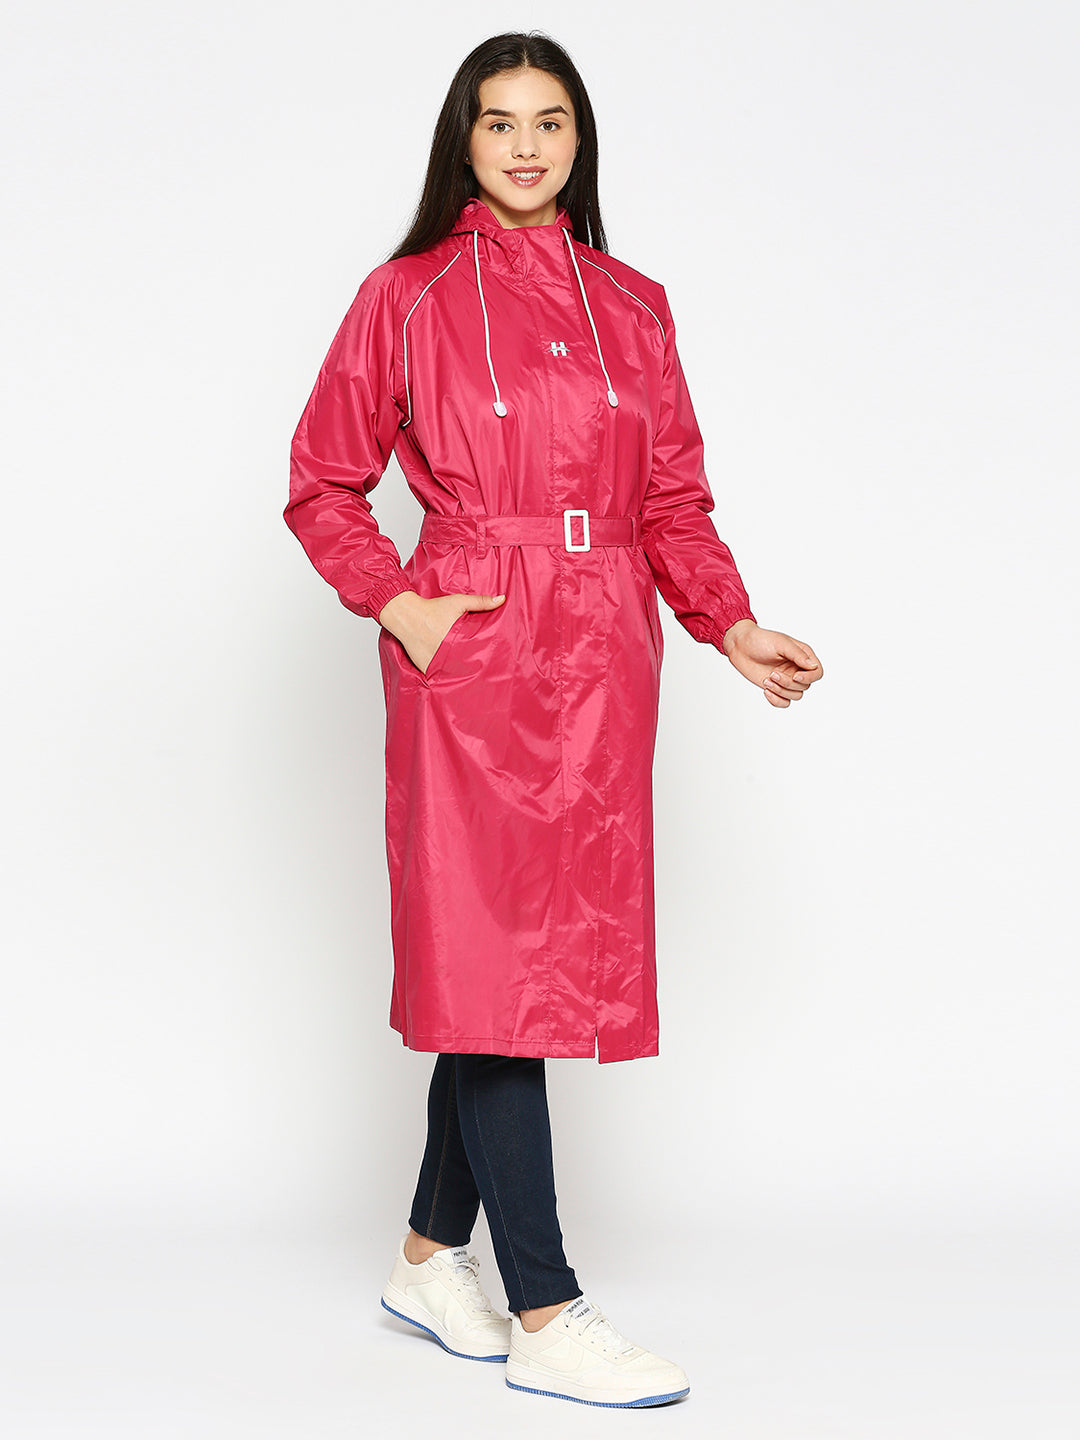 Highlands Jasmine Waterproof Trench Coat For Women